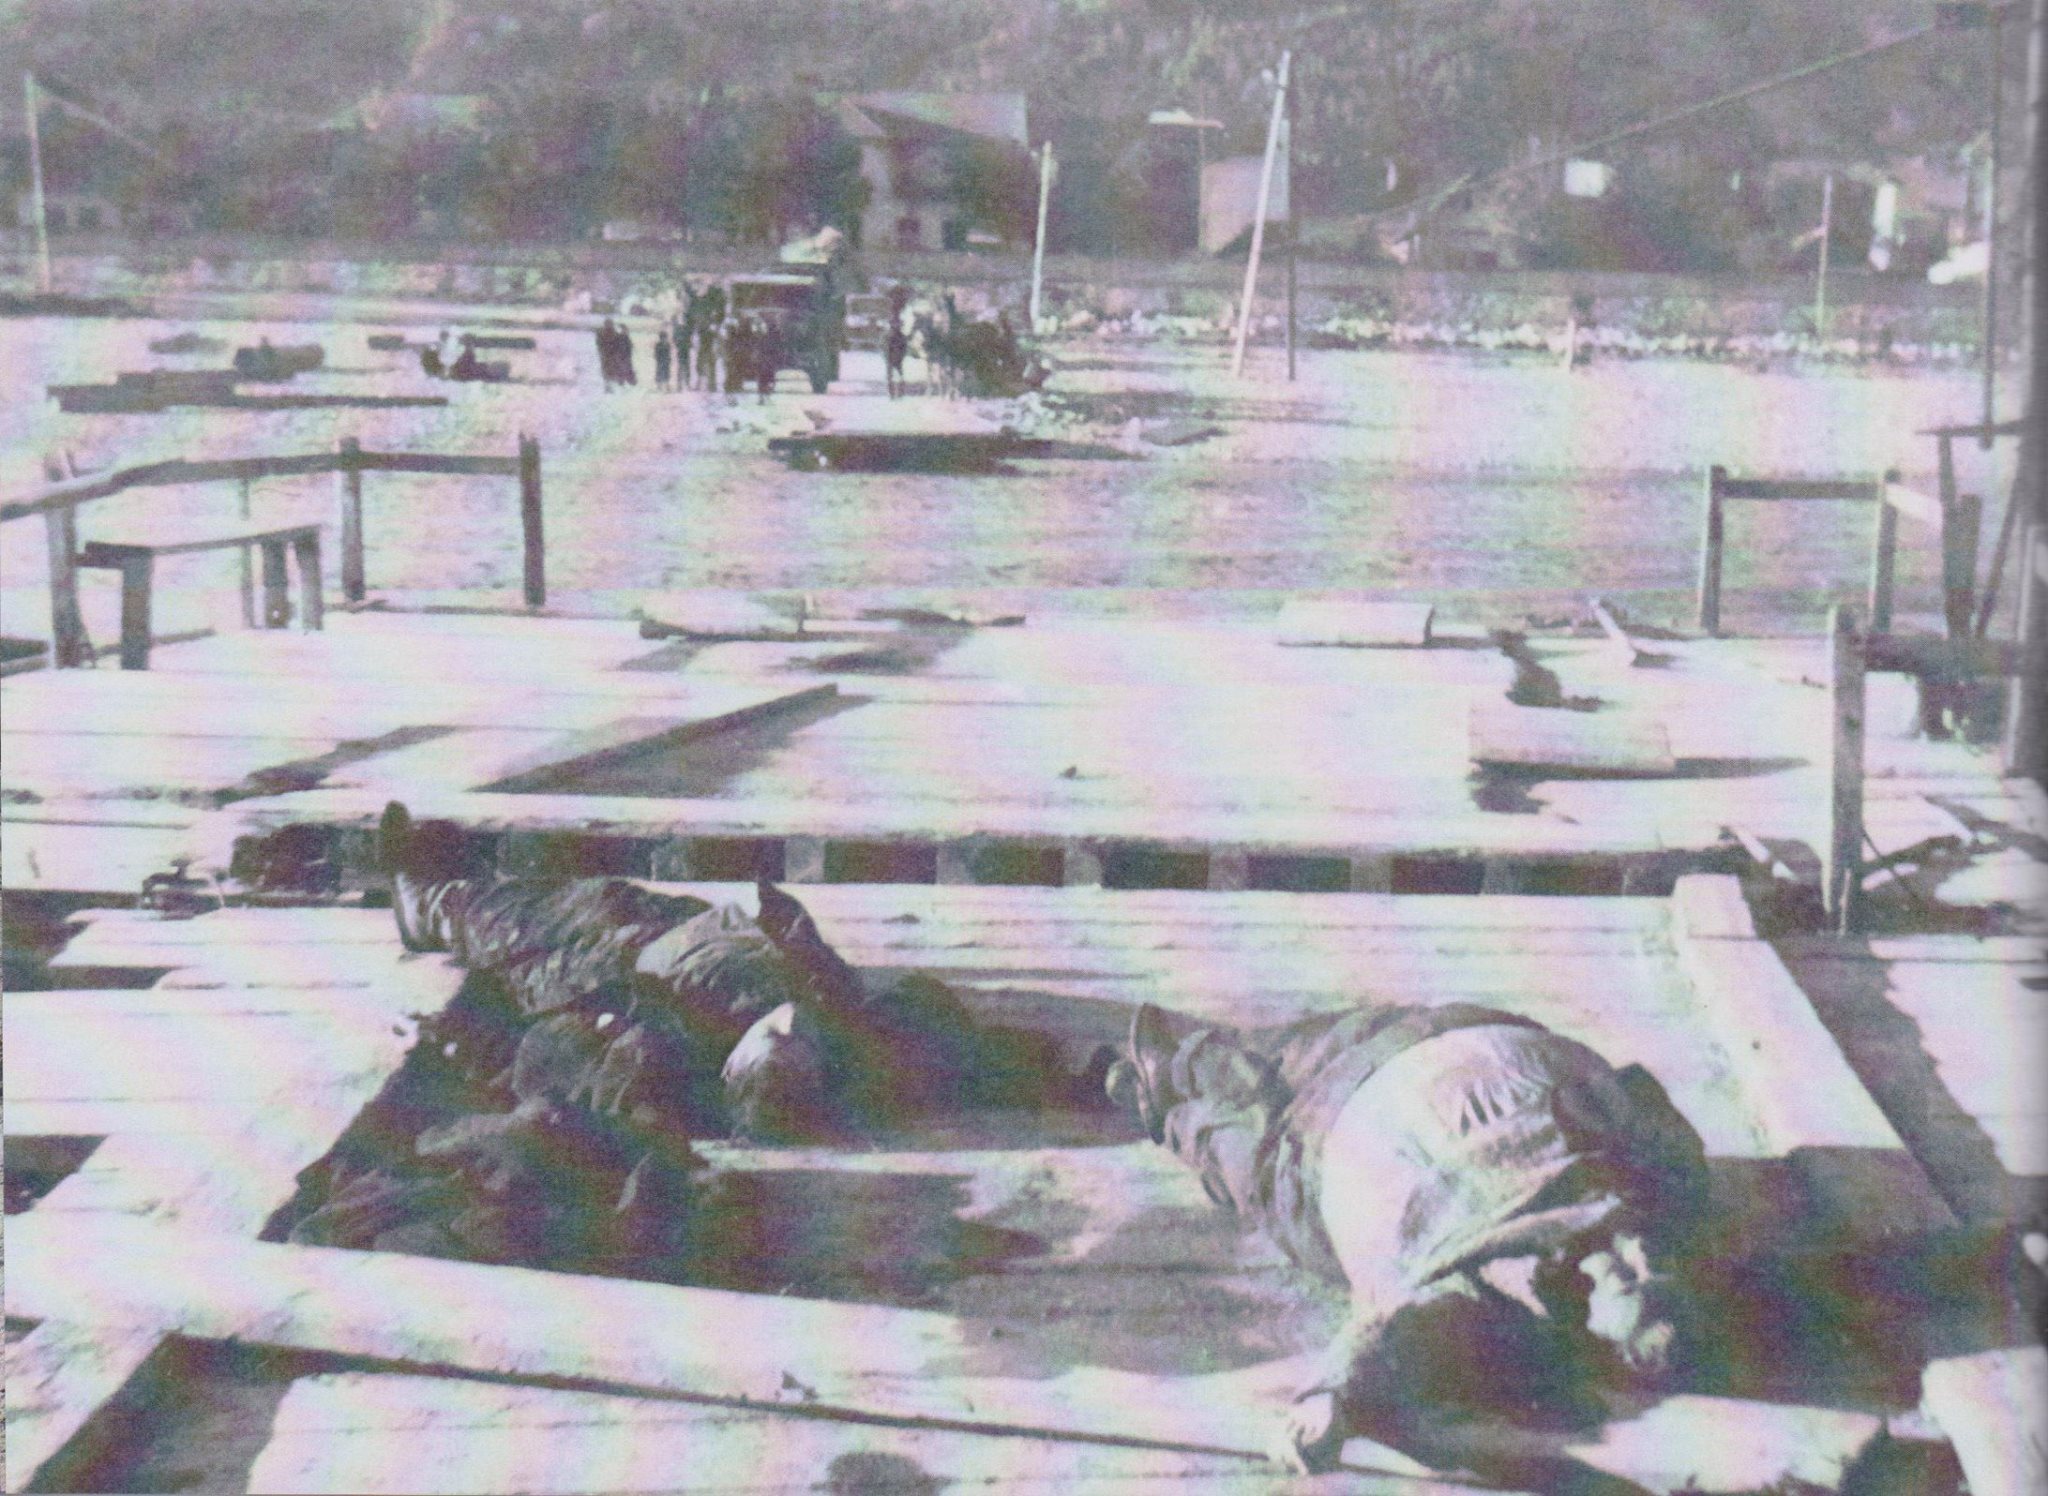 24. októbra 1946 sa z kompy, ktorá ešte premávala cez Váh, zošmyklo auto so 4 osobami. Nešťastie si vyžiadalo 3 mŕtvych, 1 osobe sa podarilo uniknúť z topiaceho sa auta. Na fotografiách, ktoré pochádzajú z knihy L. Ganáta - Horné Kočkovce (2015), vidieť mŕtvych, púchovský breh rieky a zničené auto...